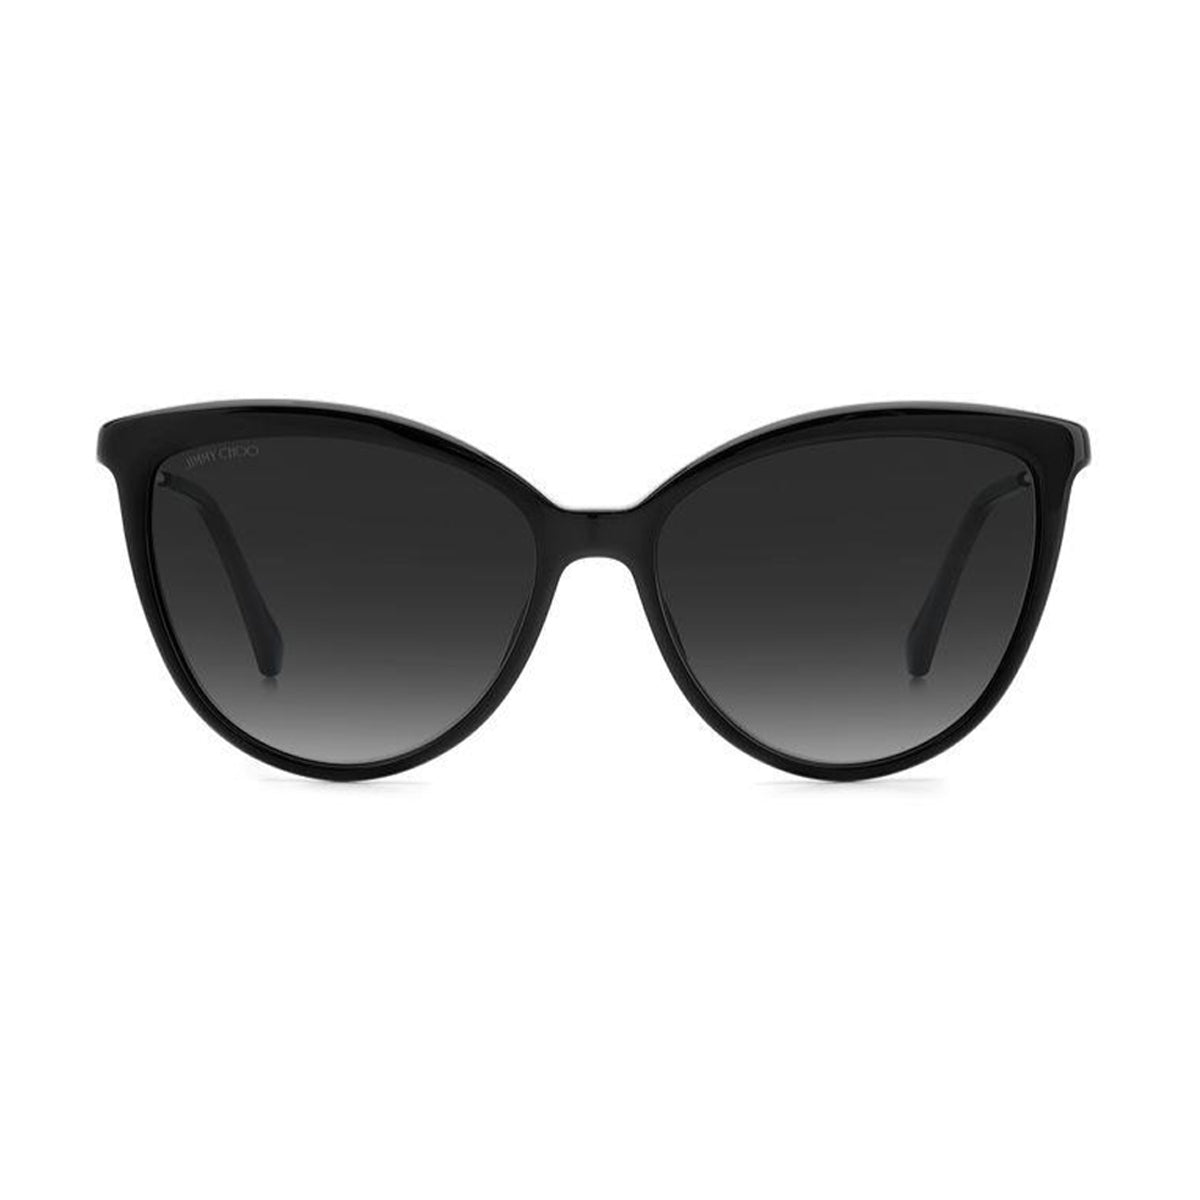 JC Belinda/s 807/9O-Occhiali da sole-Jimmy Choo-La collezione di occhiali da sole Crystal Fabric di Jimmy Choo rappresenta il fascino unico e scintillante del marchio. Questa linea presenta un design straordinario con lussuosi cristalli Swarovski, applicati a mano sulle aste, che caratterizzano una selezione di occhiali ultra chic con uno stile inconfondibile. Questo modello da sole presenta un frontale in acetato dalla forma a farfalla e terminali tono su tono. Il piccolo logo sulle sottili aste in metallo